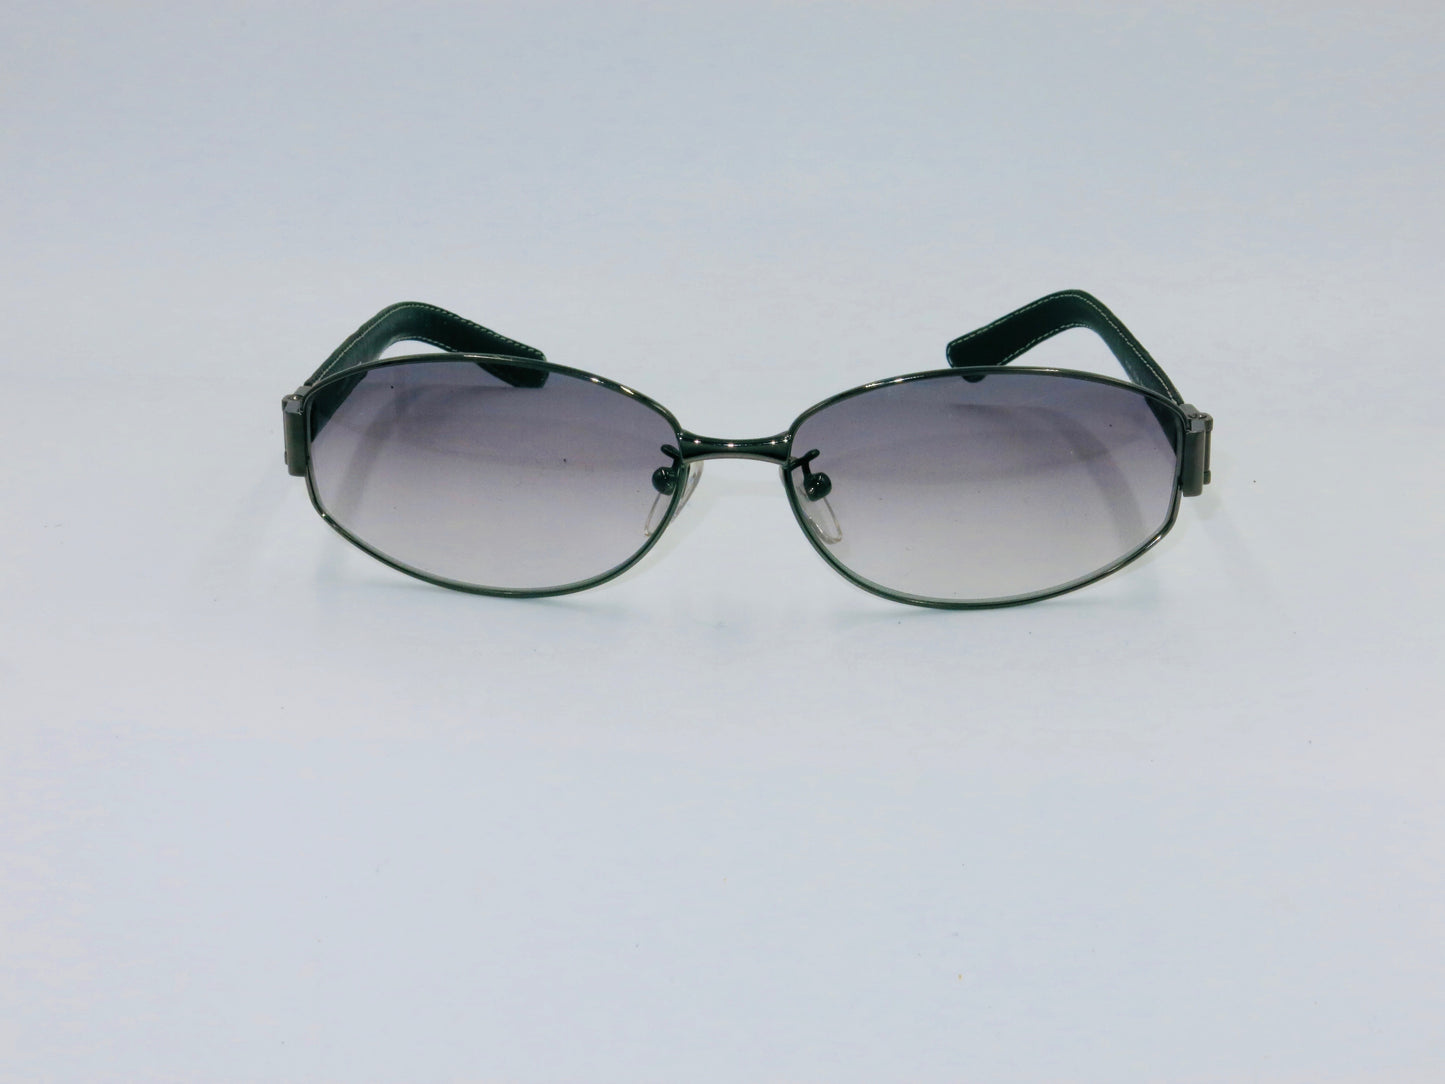 Fendi Sunglasses FS 286 - Silver | Sunglasses by Fendi